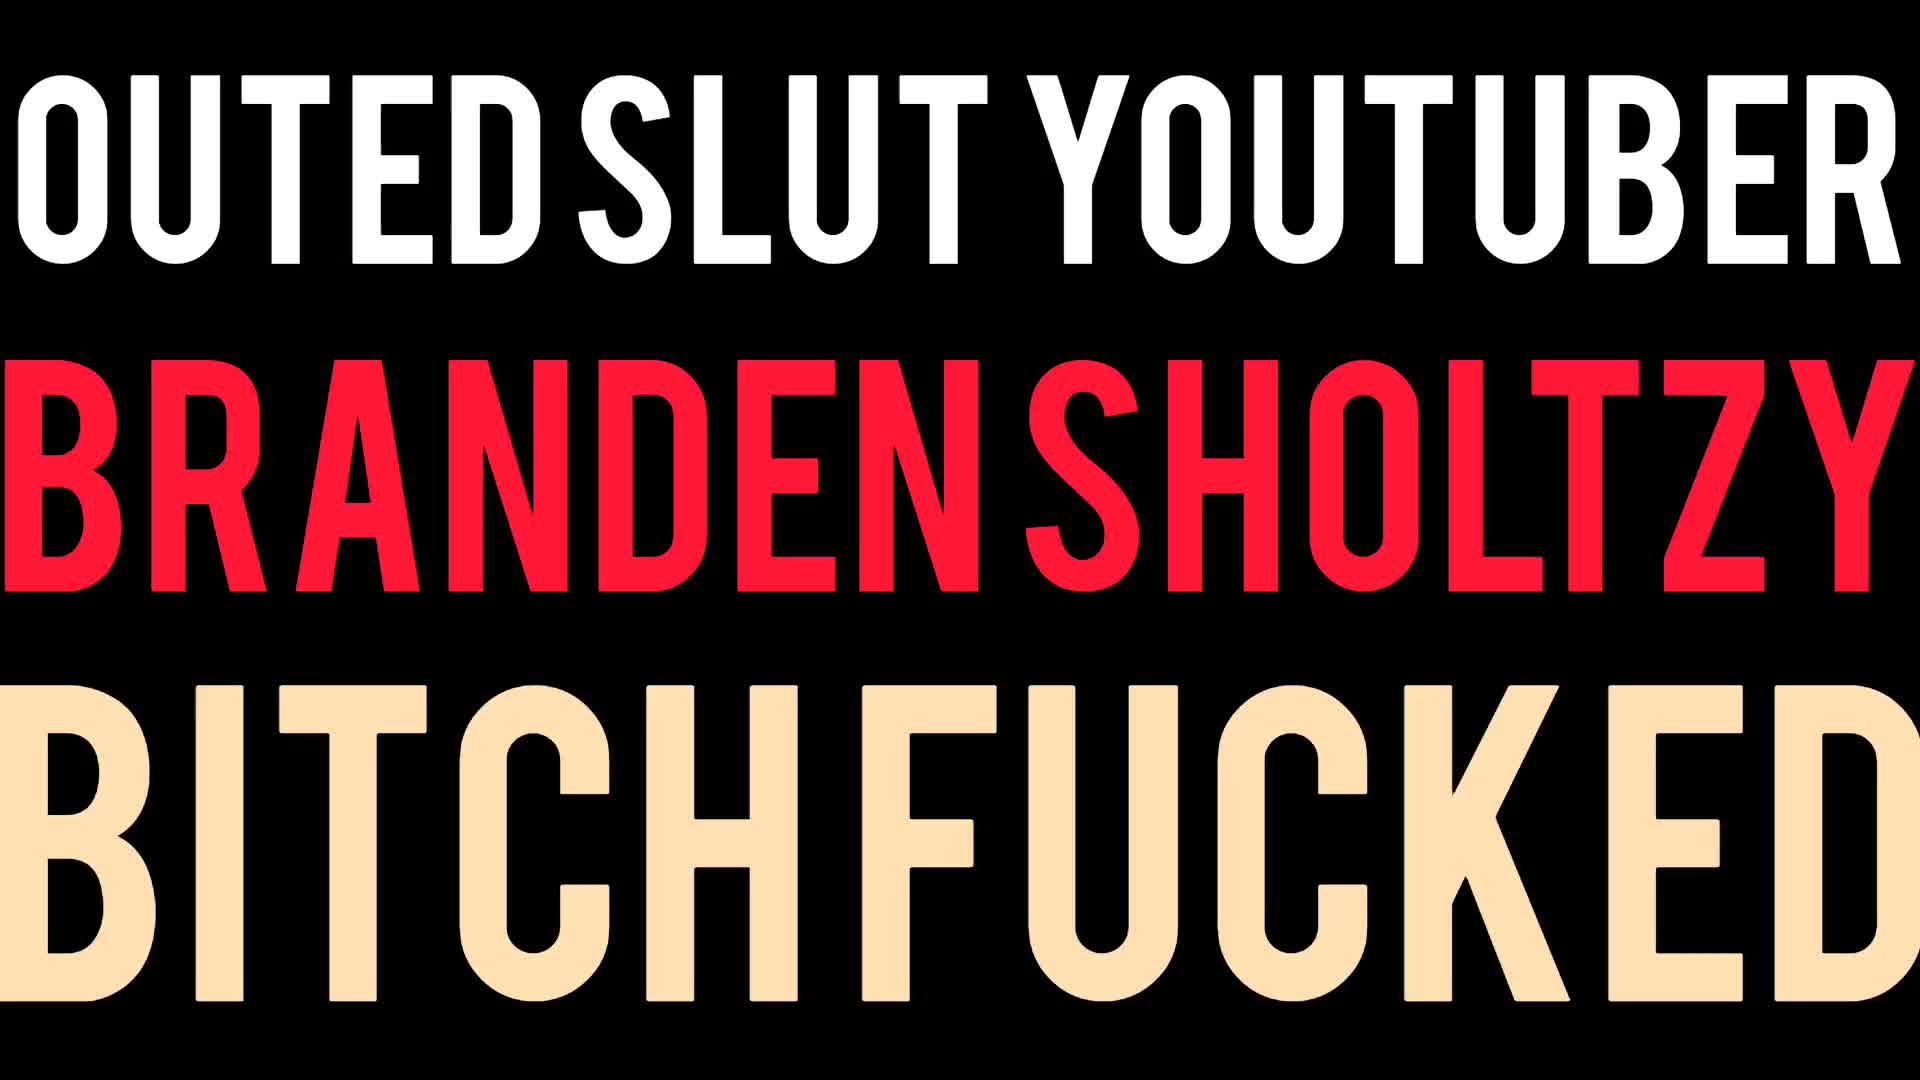 फूहड़ YouTuber Branden Sholtzy को कुतिया की तरह चोदा!